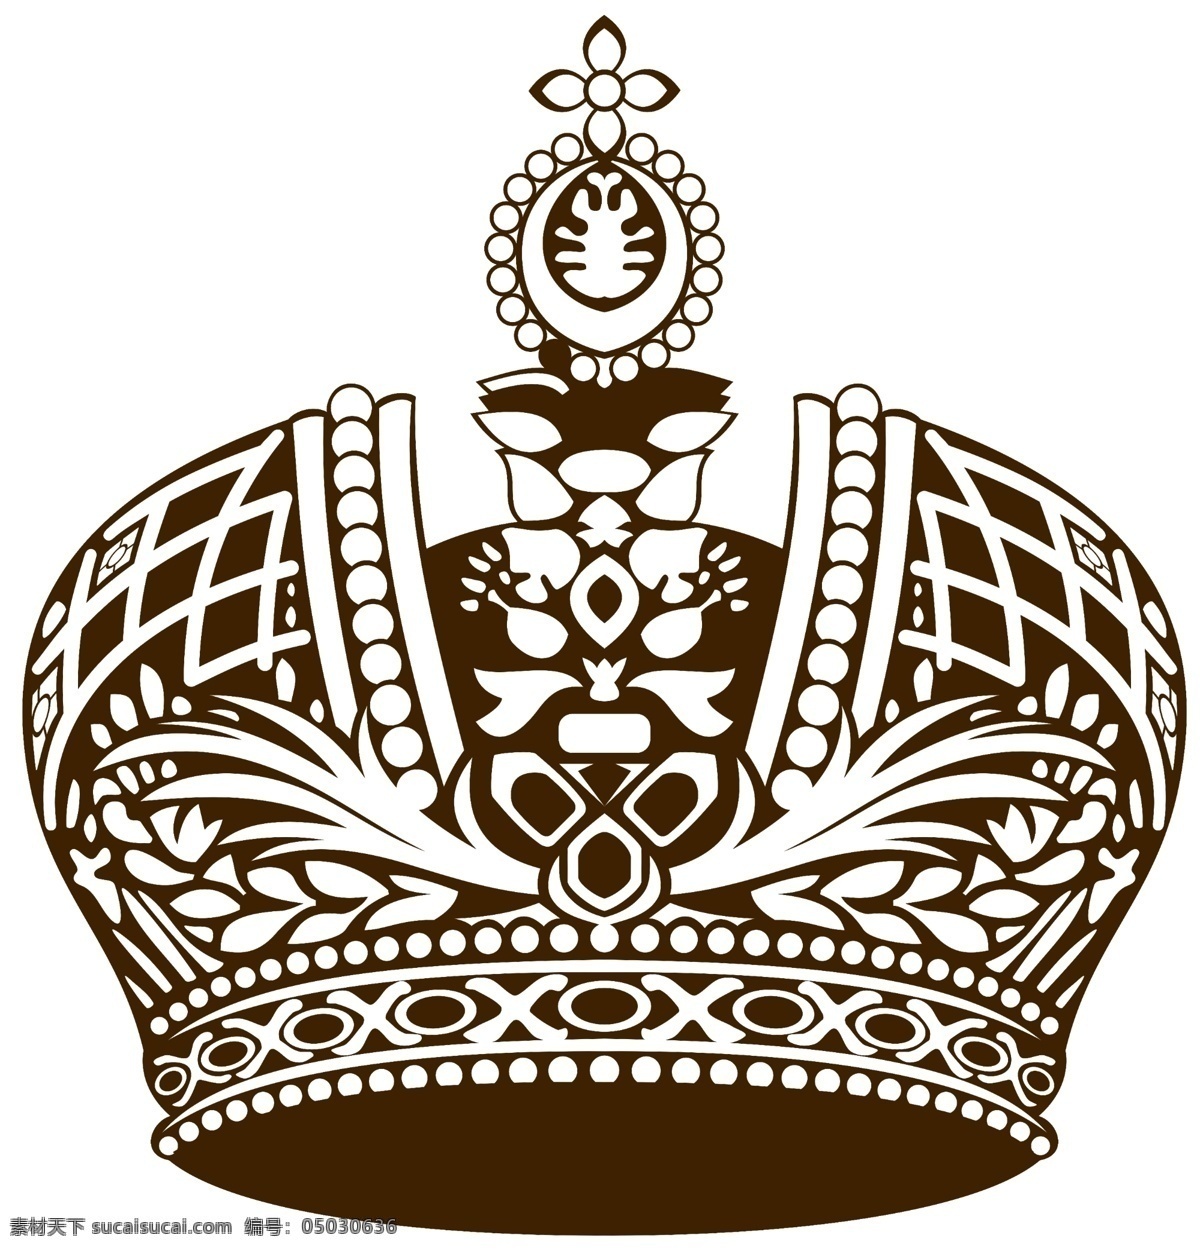 欧式 皇冠 高清 公主 古代 国王 女王 权力象征 线条 中世纪 君主 皇族 psd源文件